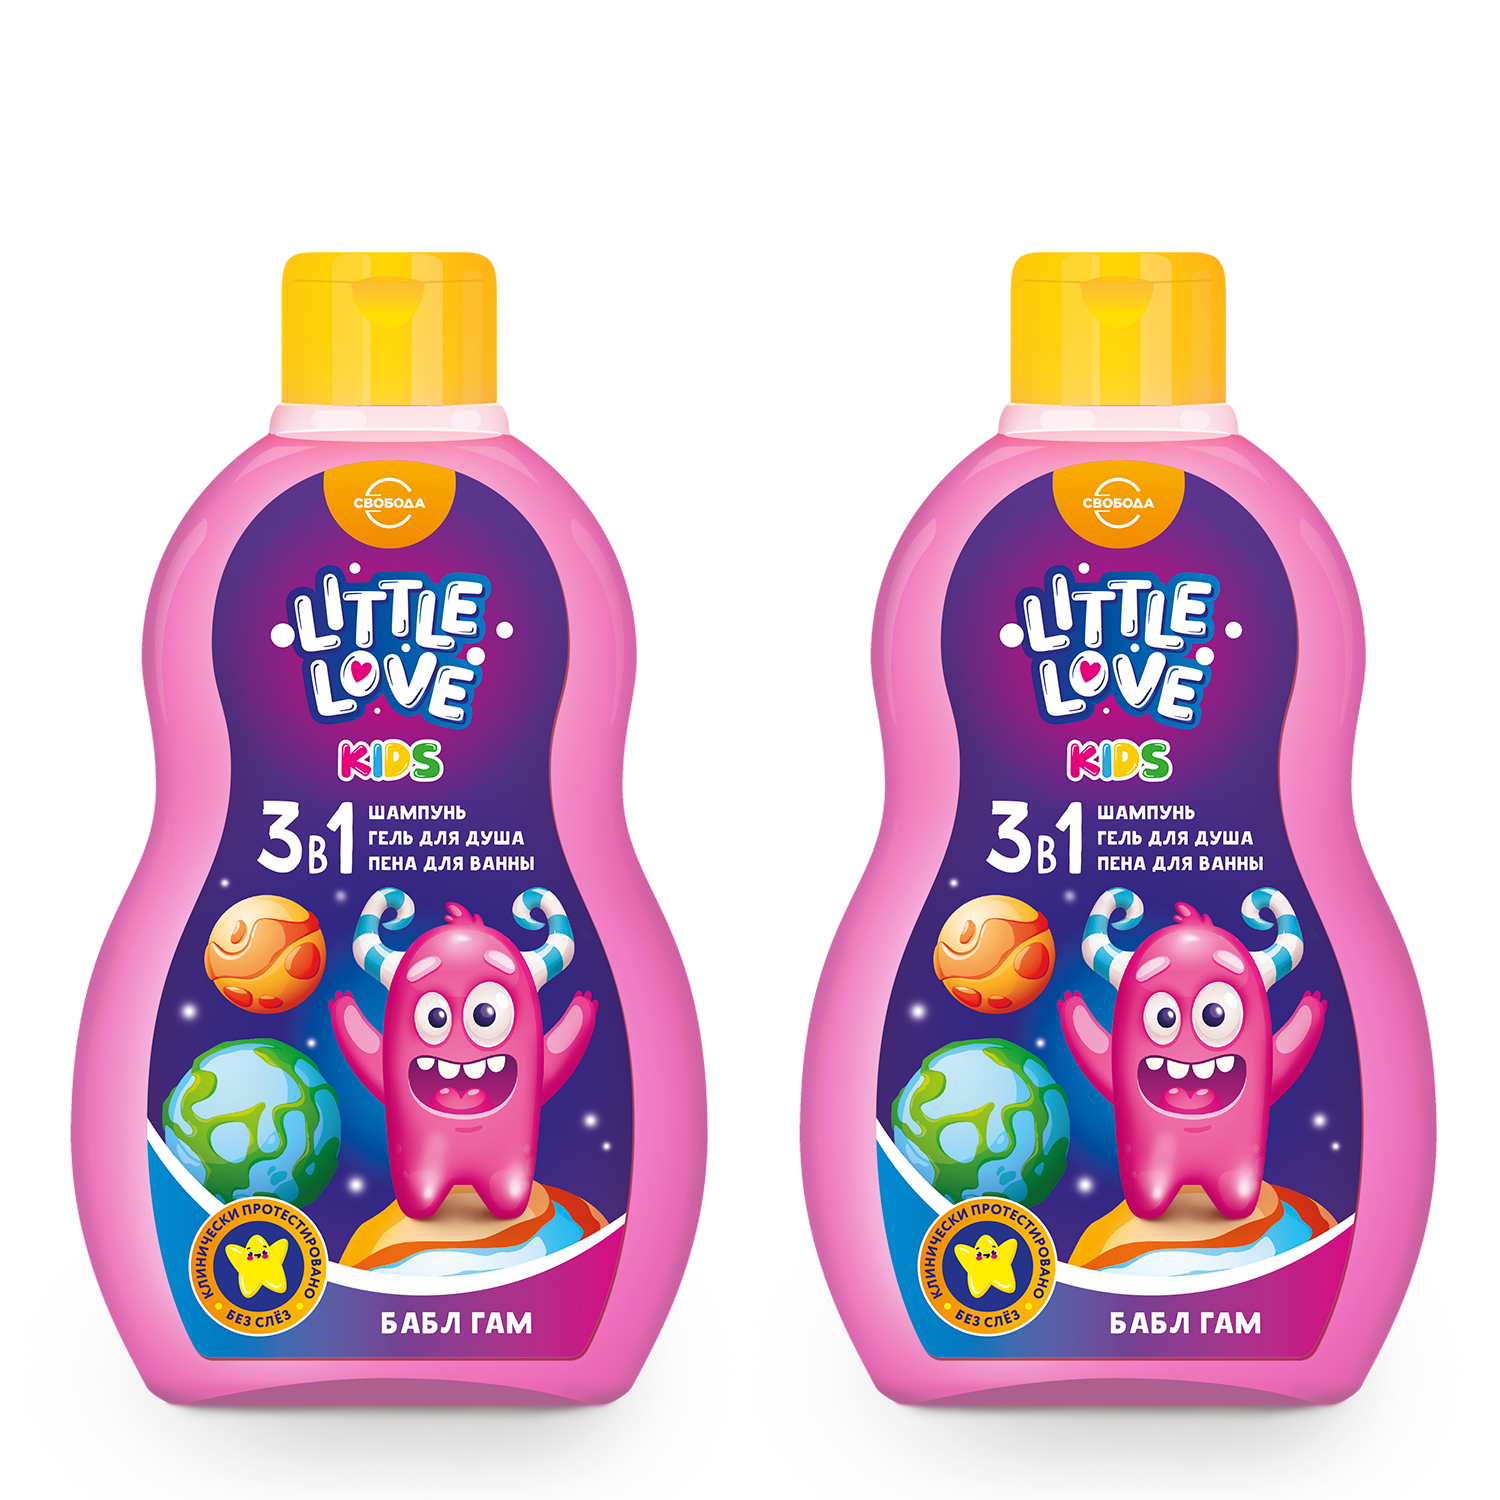 СВОБОДА Little Love Шампунь + гель для душа + пена для ванны для детей 3 в 1 бабл гам 400мл (2 шт) - фото 1